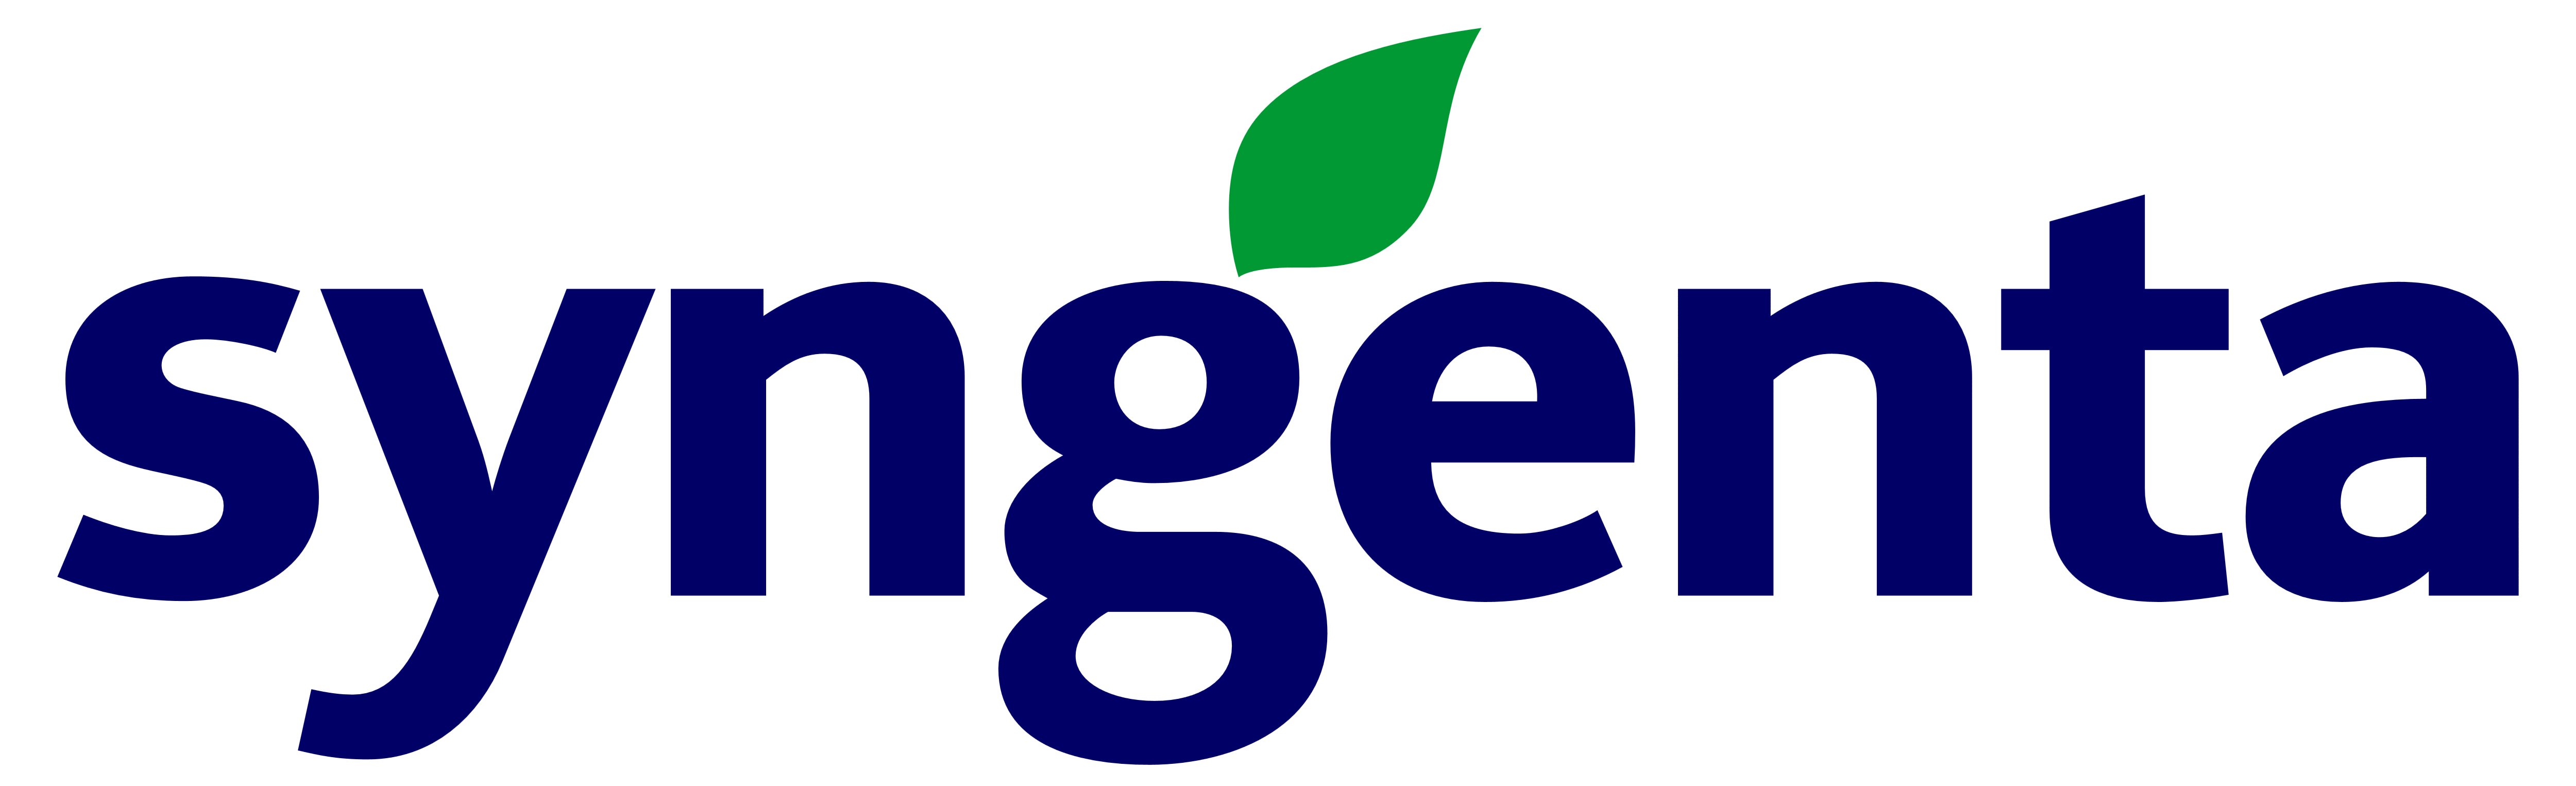 Syngenta logo white background 5000PX